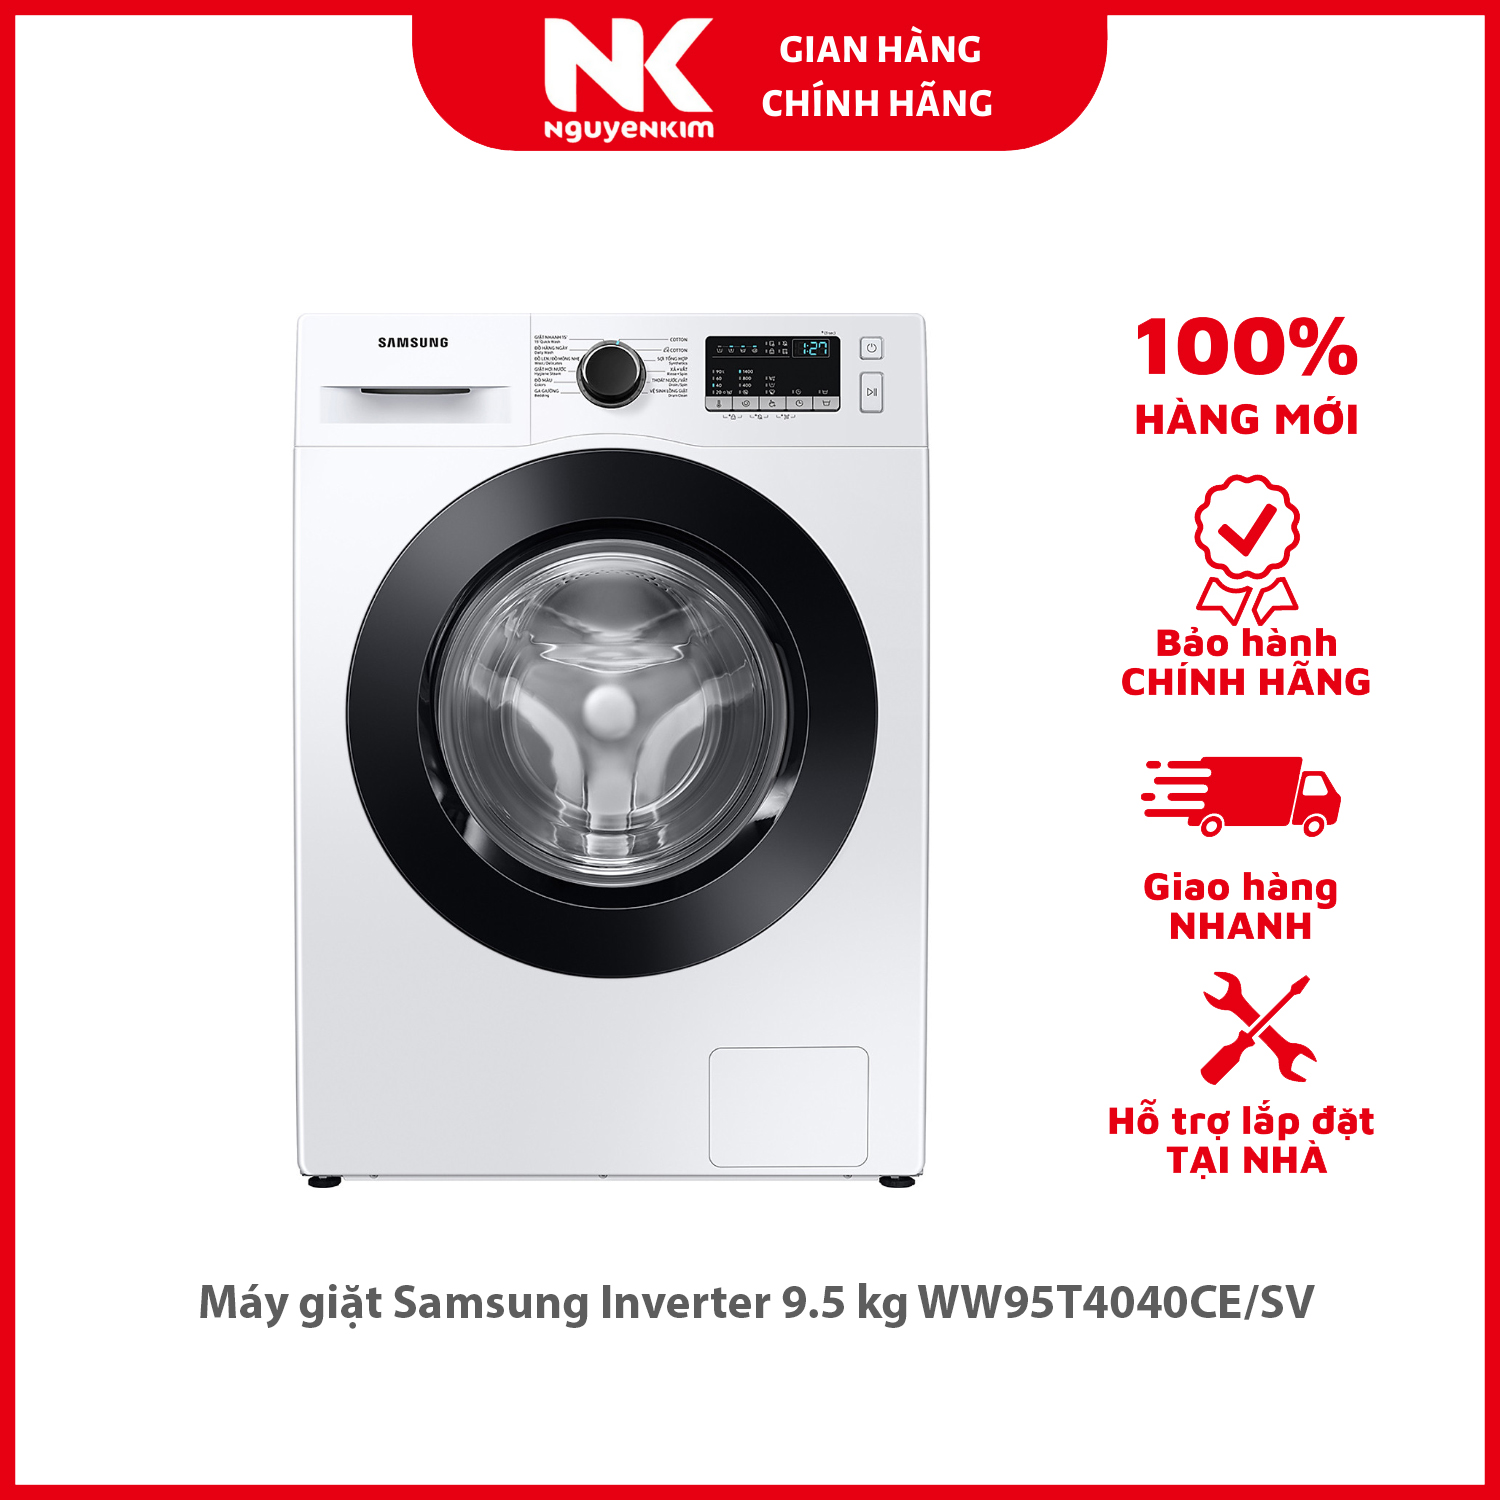 Máy giặt Samsung Inverter 9.5 kg WW95T4040CE/SV - Hàng chính hãng [Giao hàng toàn quốc]